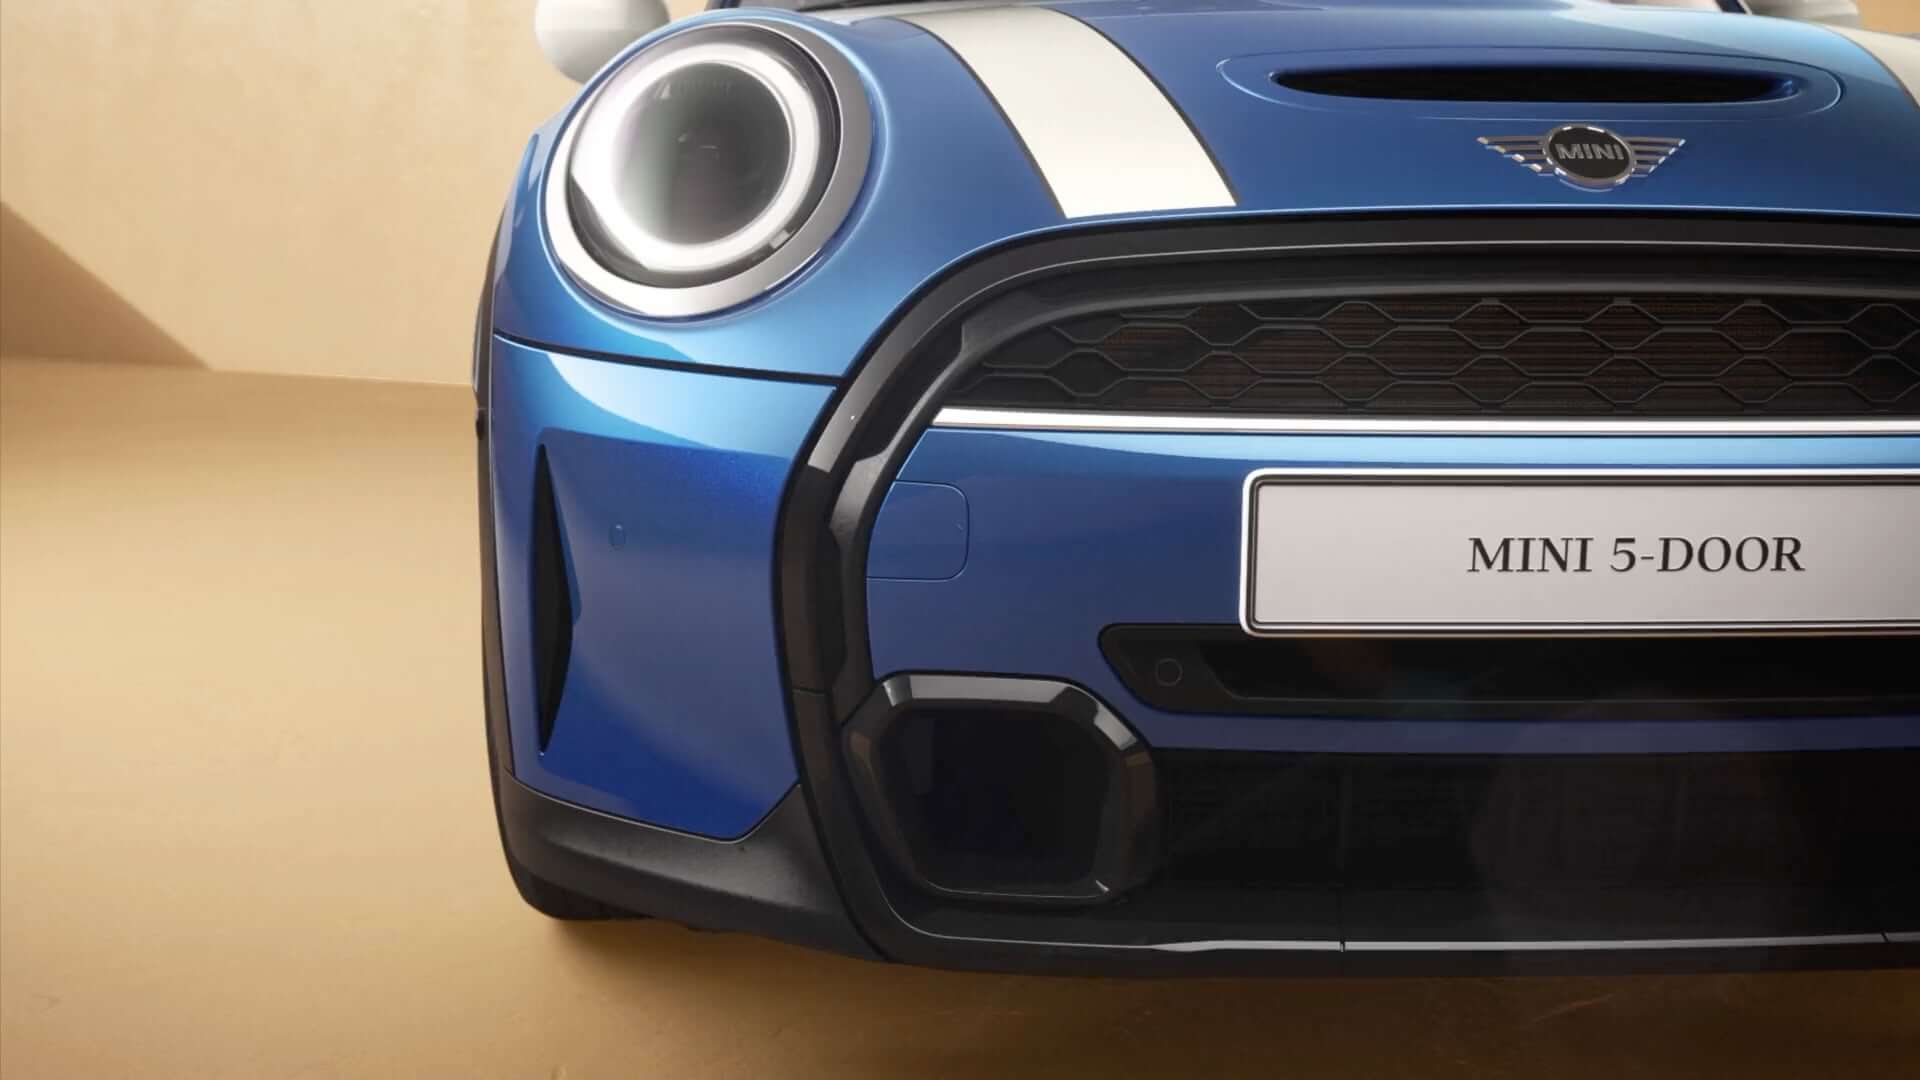 MINI 5 puertas Hatch – vista lateral frontal – azul y blanco